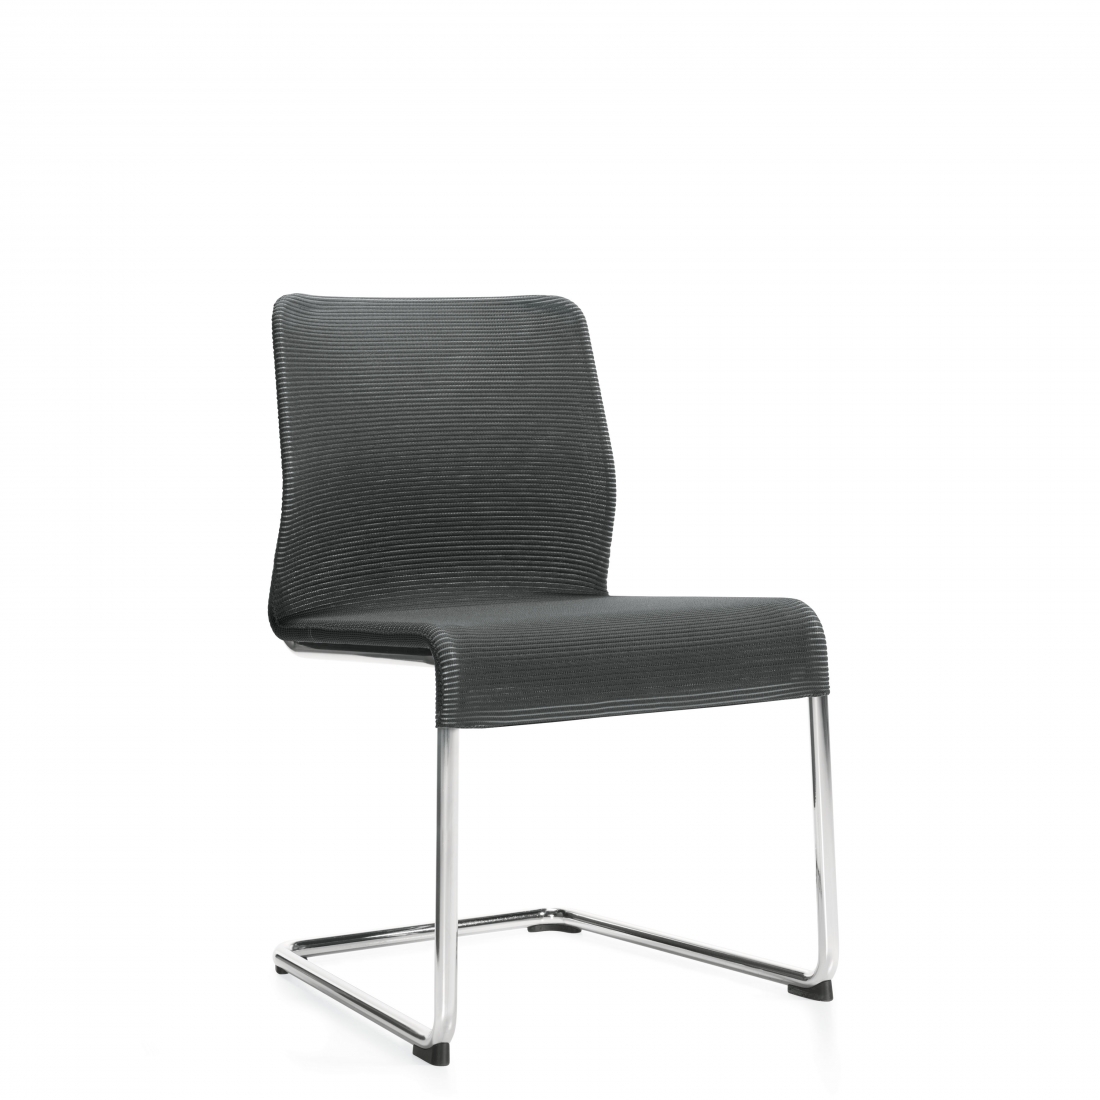 Armless Chair, Cantilever Frame